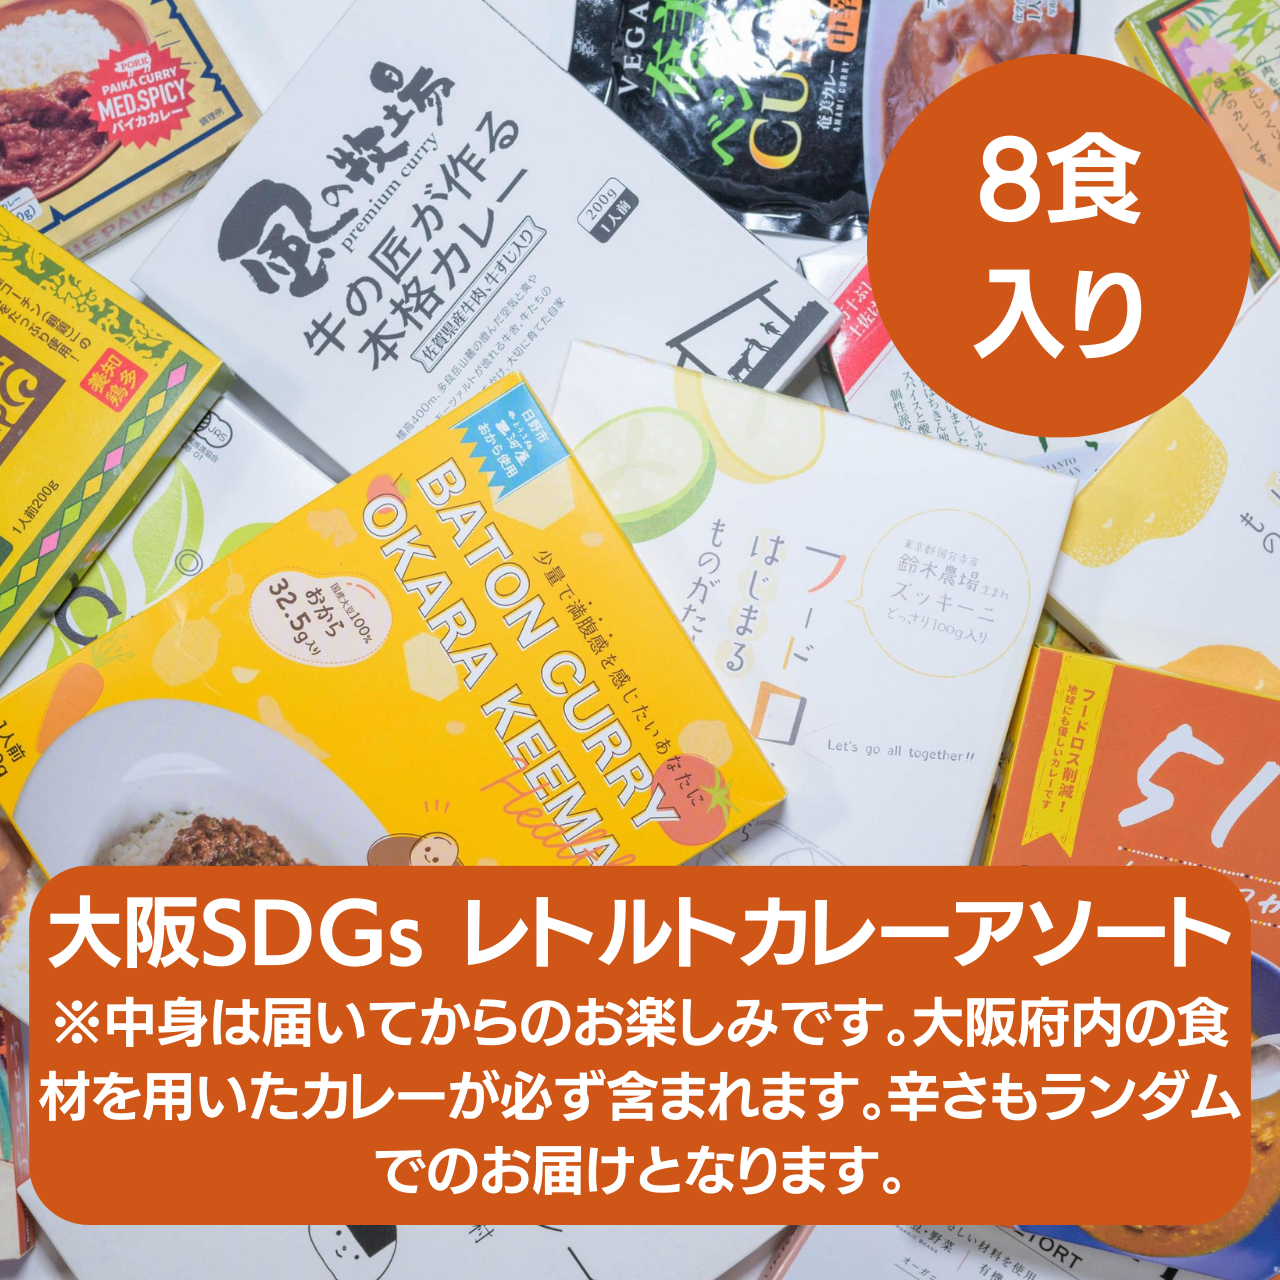 大阪SDGs レトルトカレーアソート8食入り